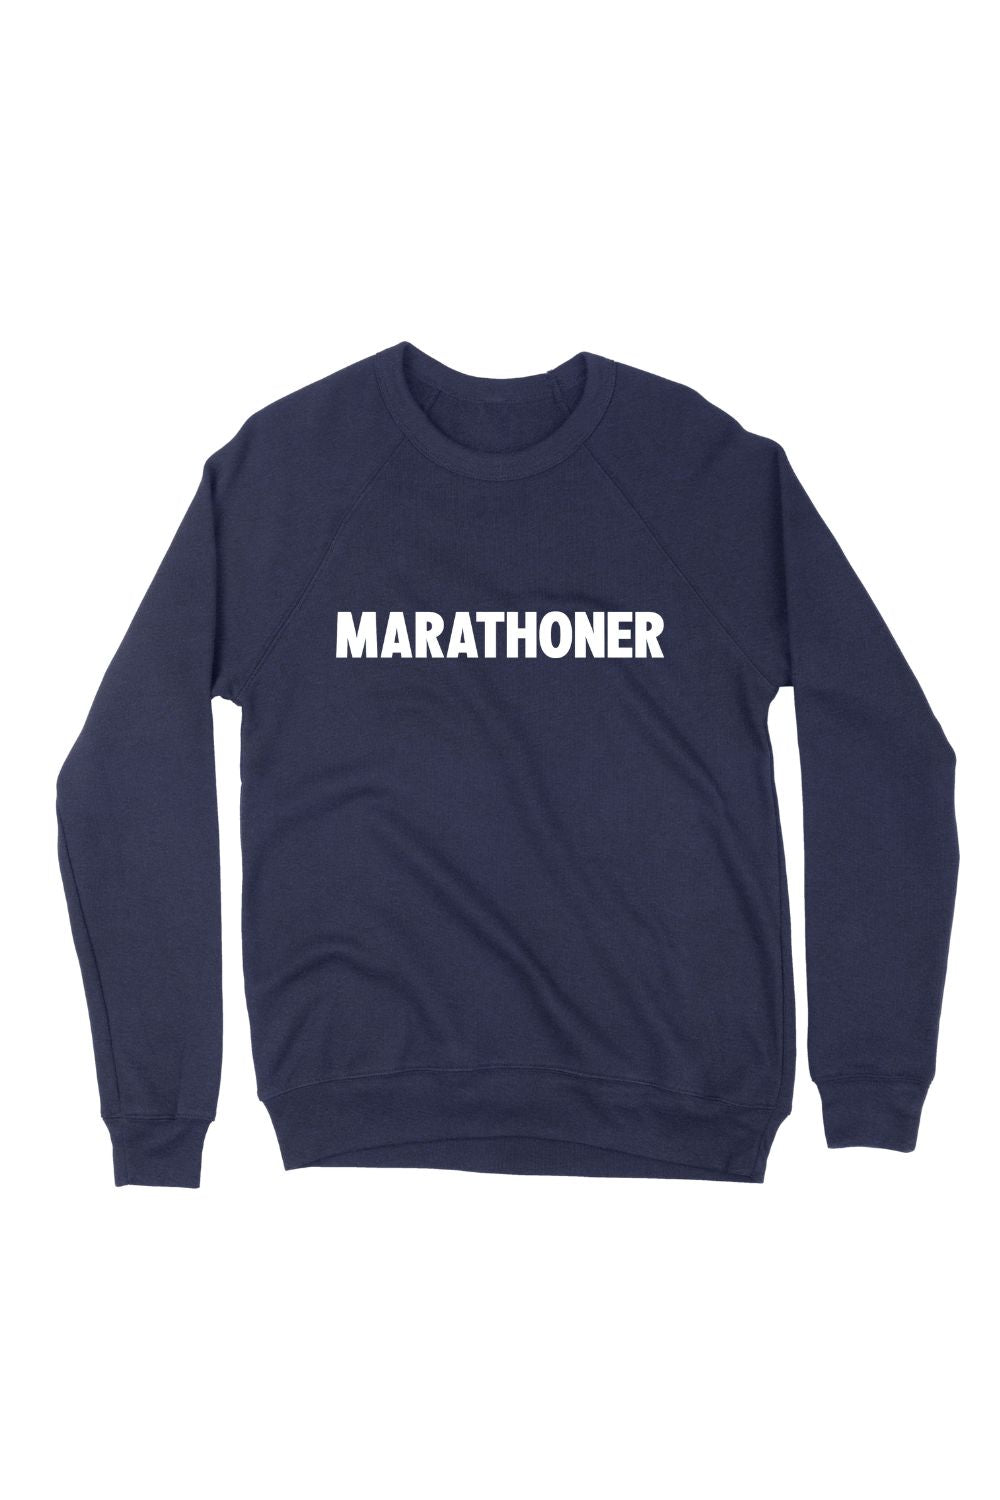 Marathoner Sweatshirt